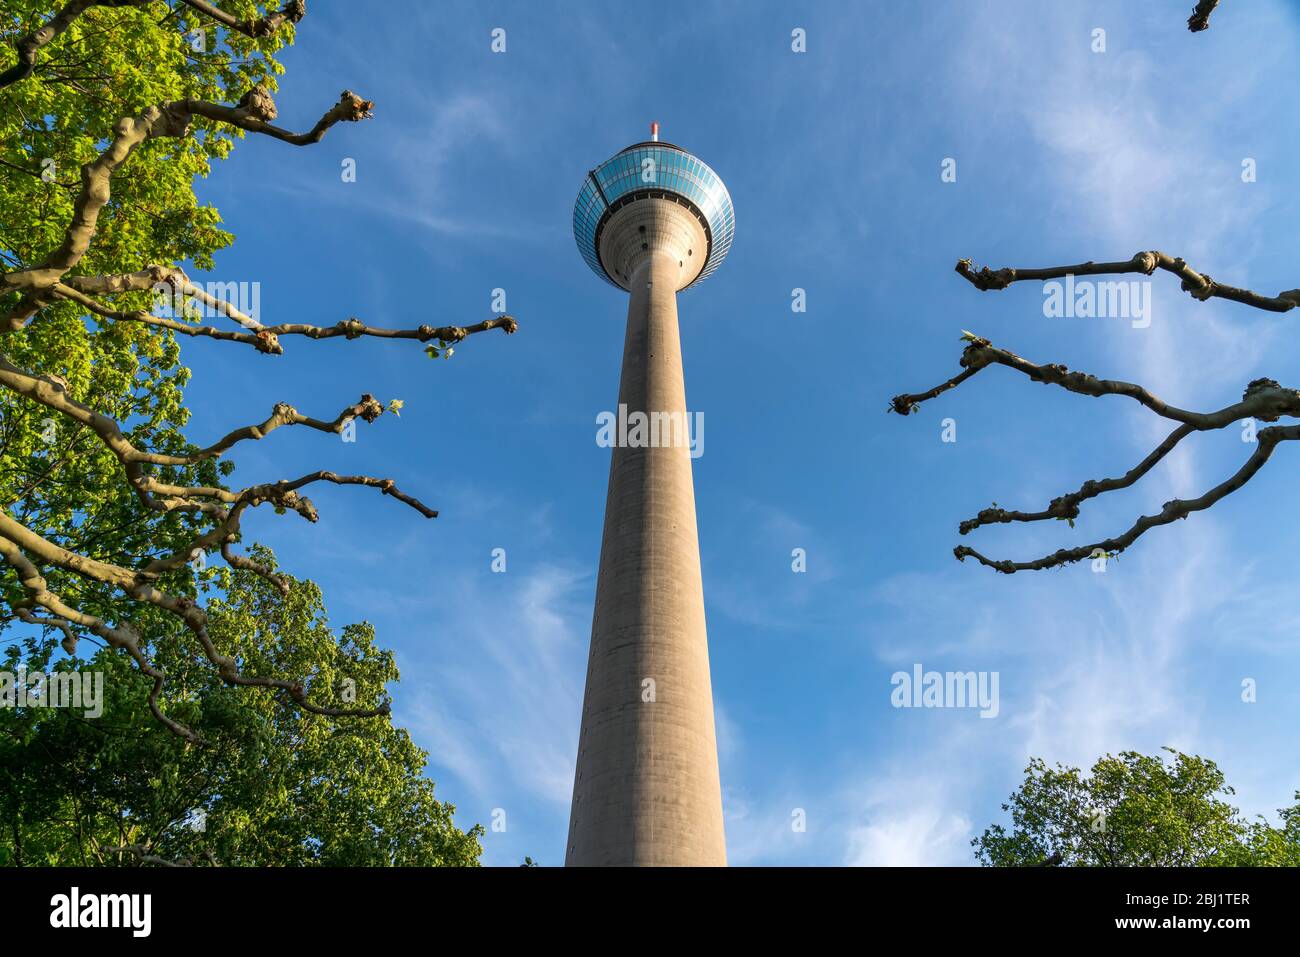 Fernsehturm Rheinturm, Landeshauptstadt Duesseldorf, Nordrhein-Westfalen, Deutschland, Europa |  Rhine Tower  telecommunications tower, federal state Stock Photo